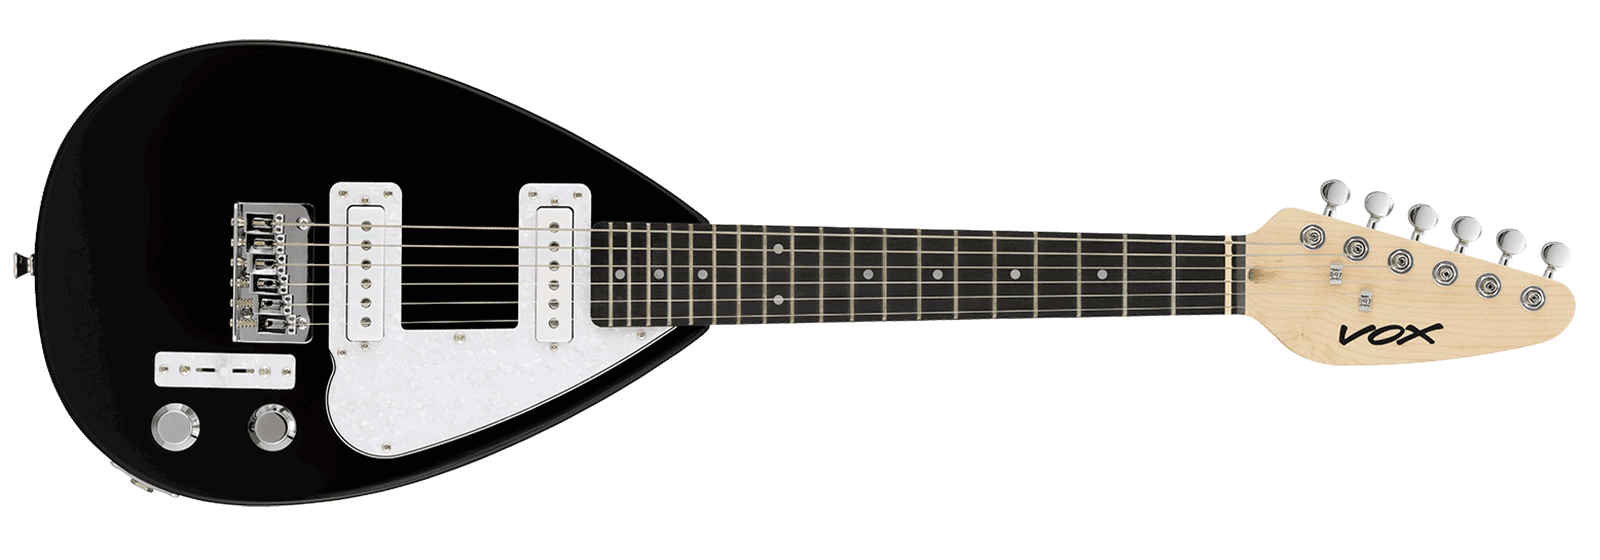 人気大割引 ギター VOX MARKⅢ 2013年モデル ティアドロップ型 ギター ...